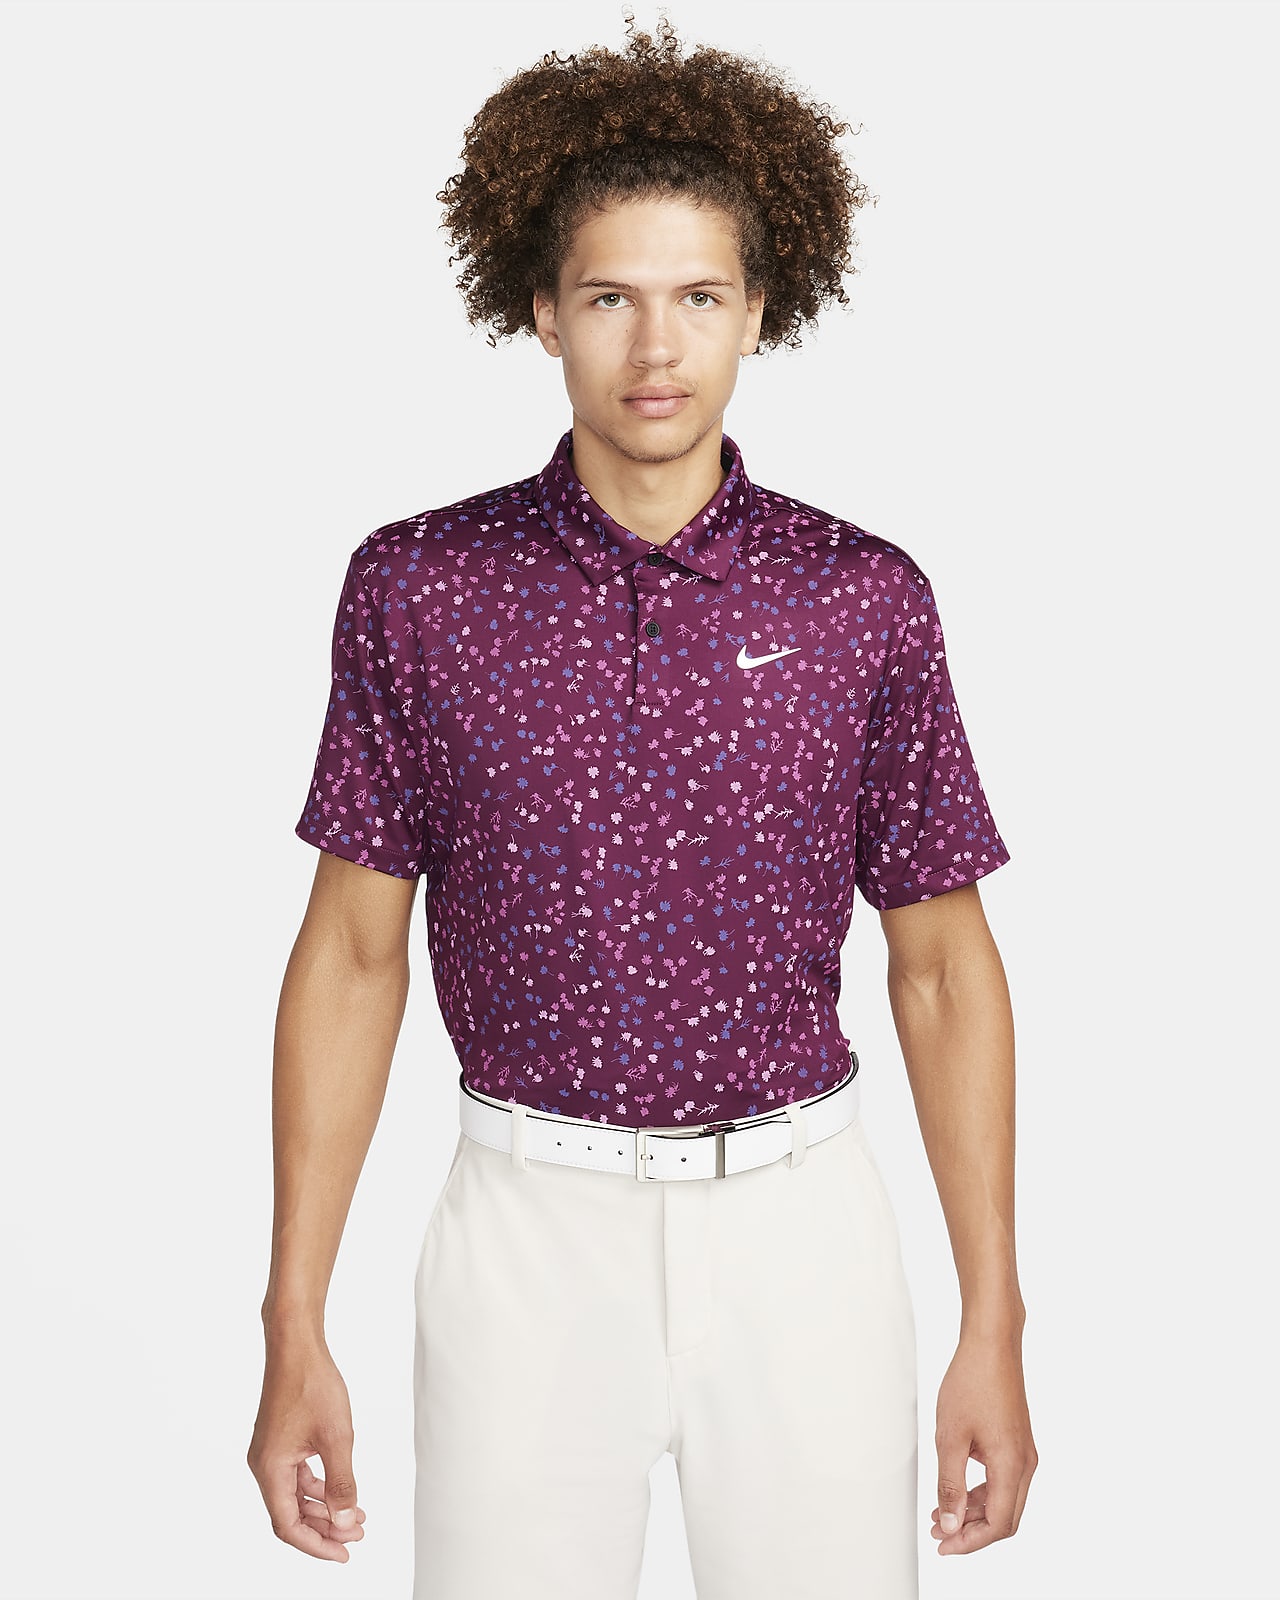 Nike Men's Dri-FIT Tour Floral Golf Polo, Medium, Bordeaux Red